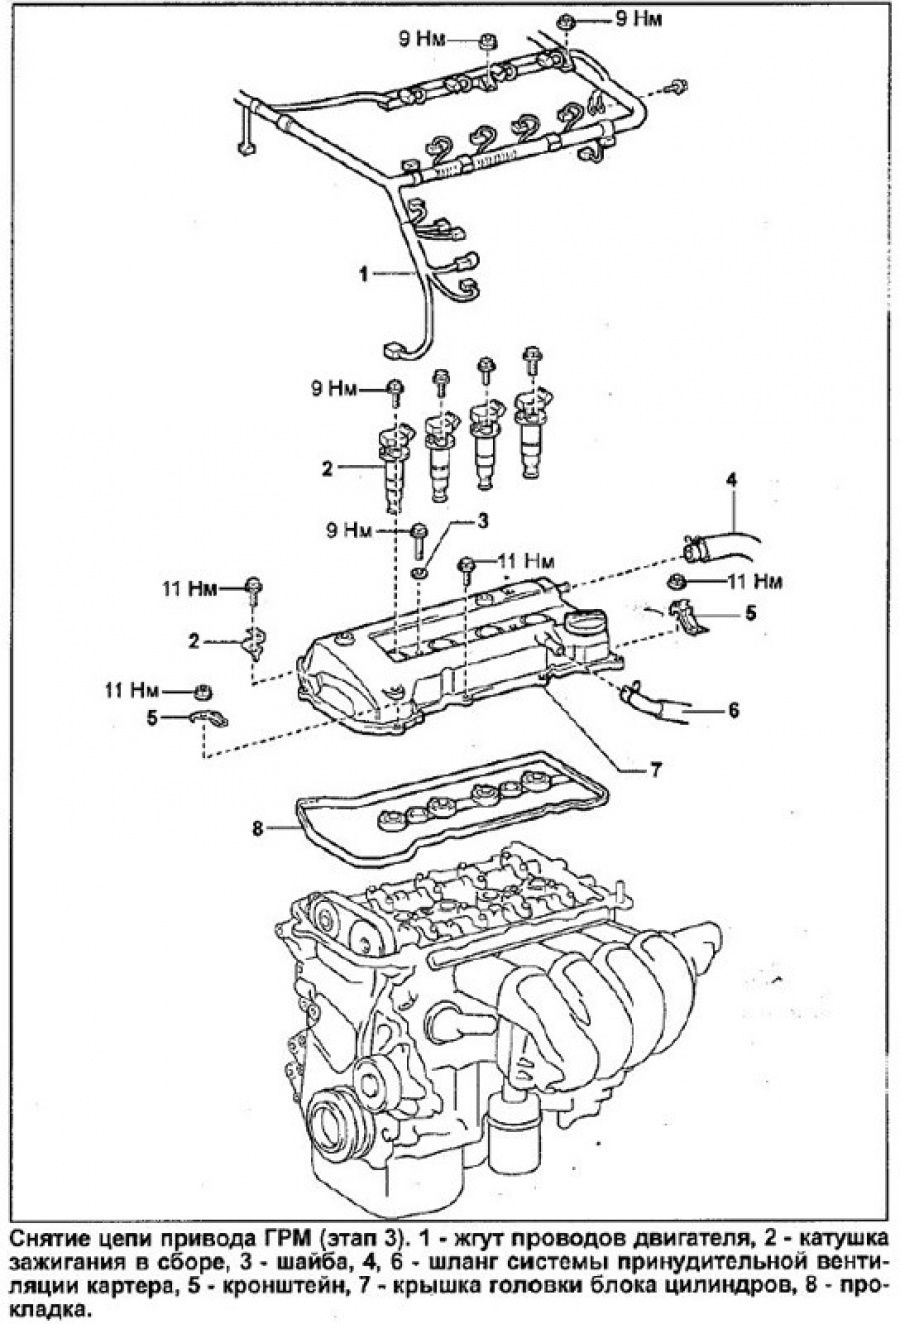 Газораспределительный механизм Тойота Celica (ДВС 2zz-ge,1999) схема